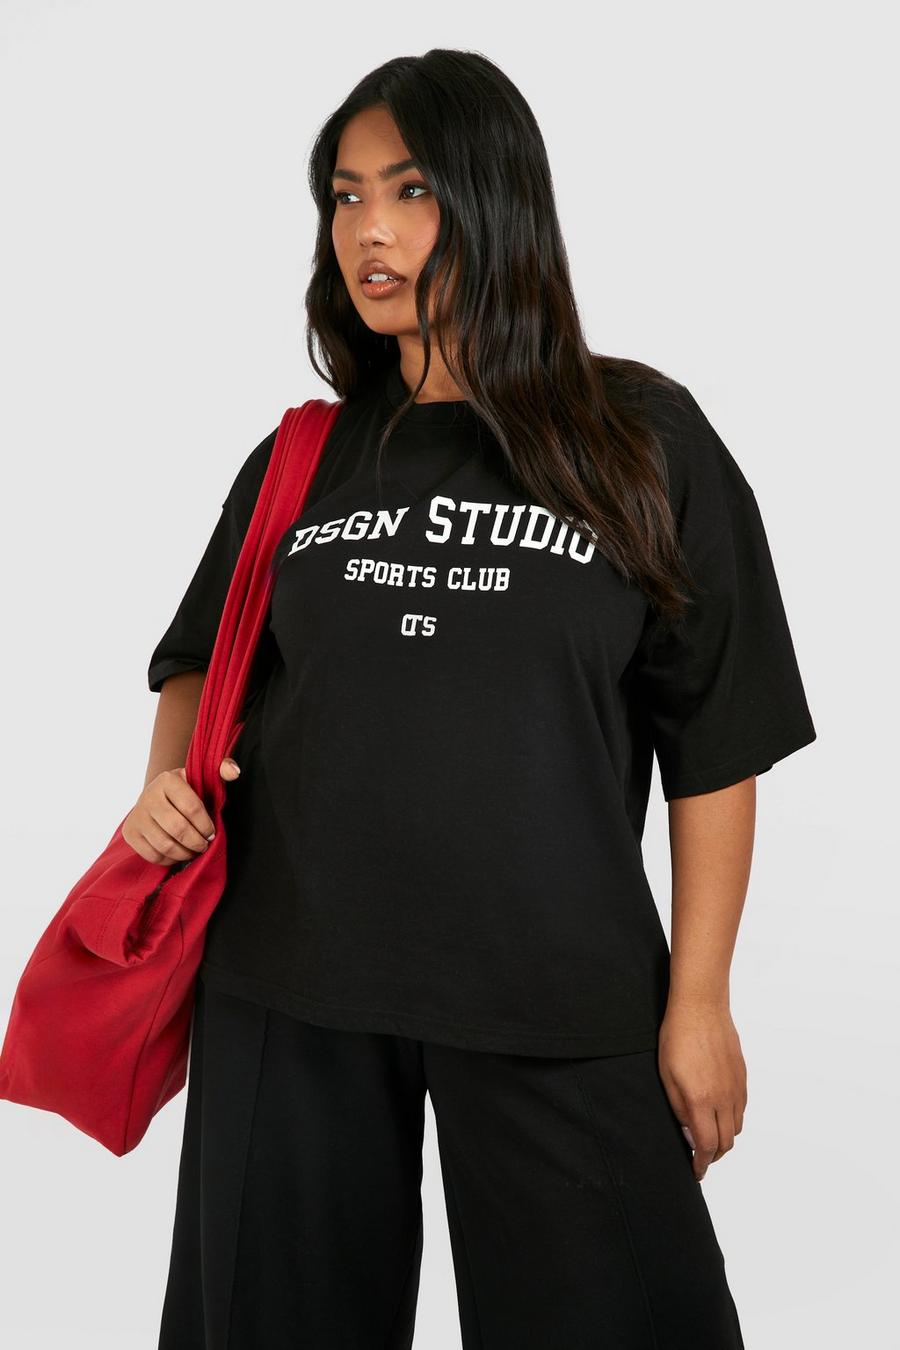 Plus Oversize T-Shirt mit Dsgn Studio Sports Club Print, Black